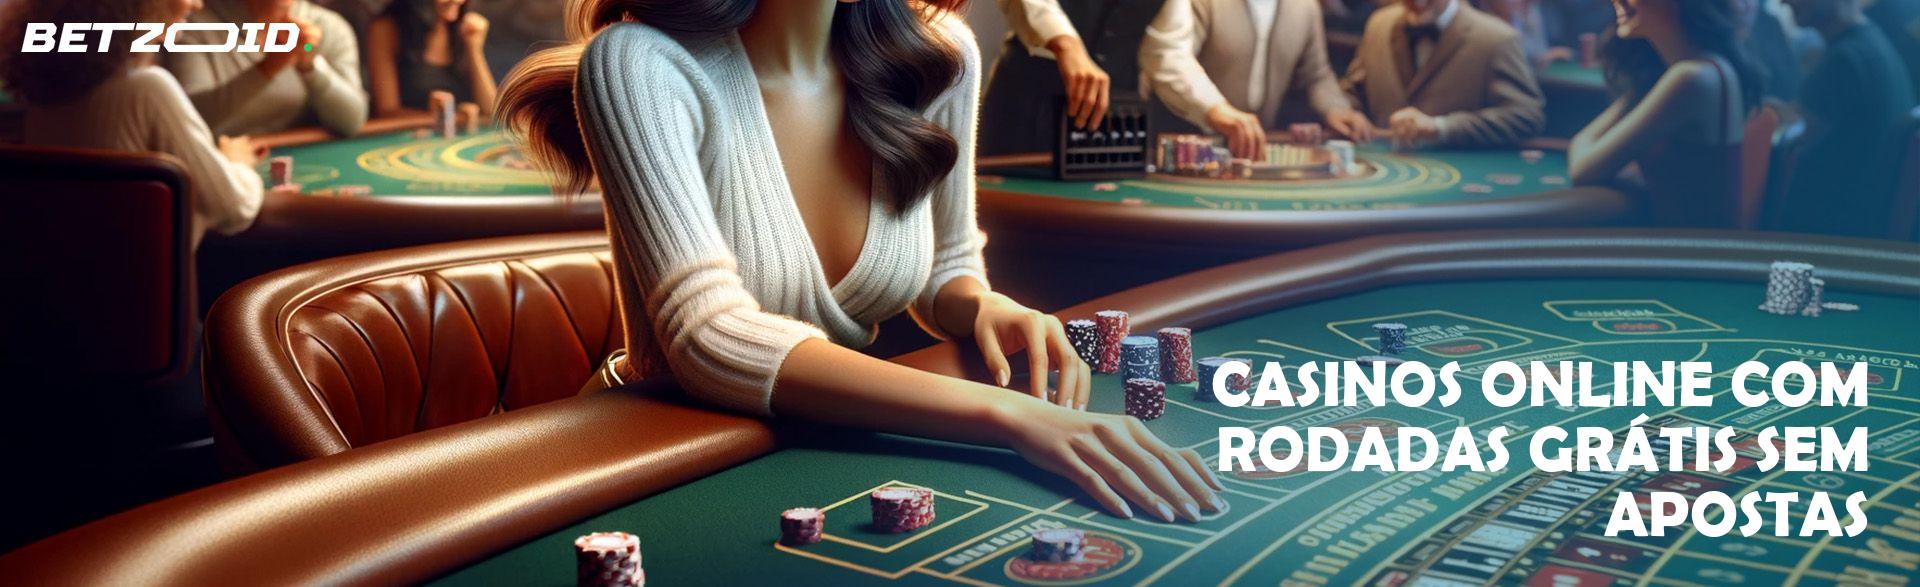 Casinos Online com Rodadas Grátis sem Apostas.